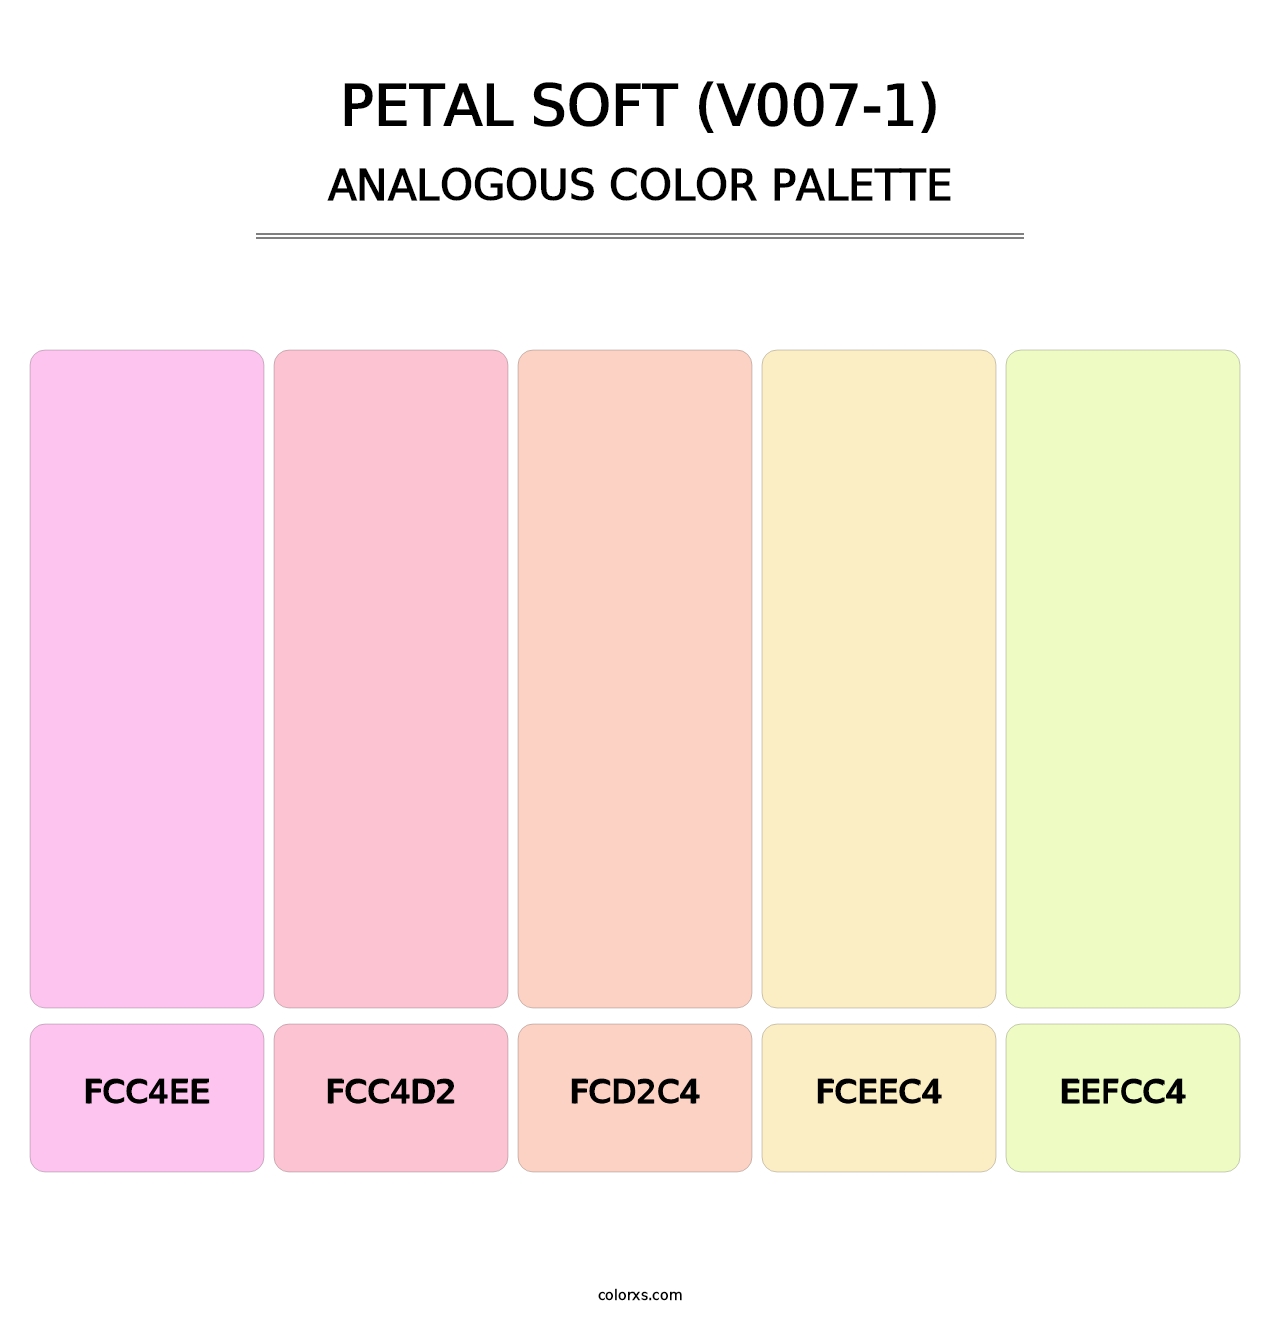 Petal Soft (V007-1) - Analogous Color Palette